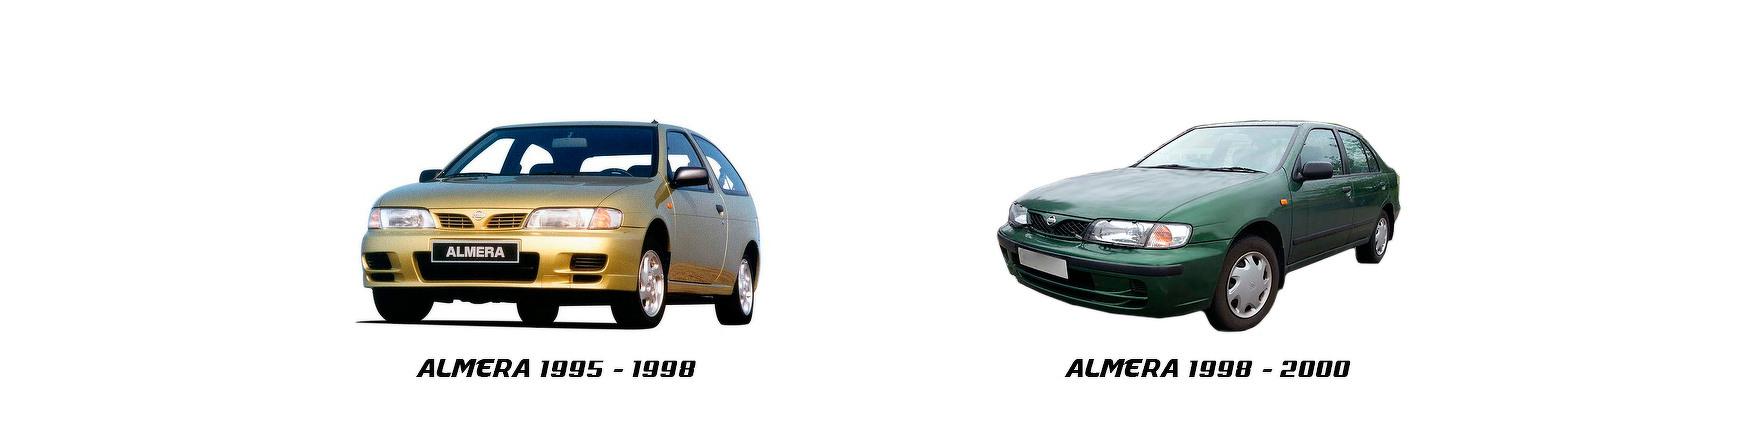 Recambios de Nissan Almera de 1996, 1997 y 1998.